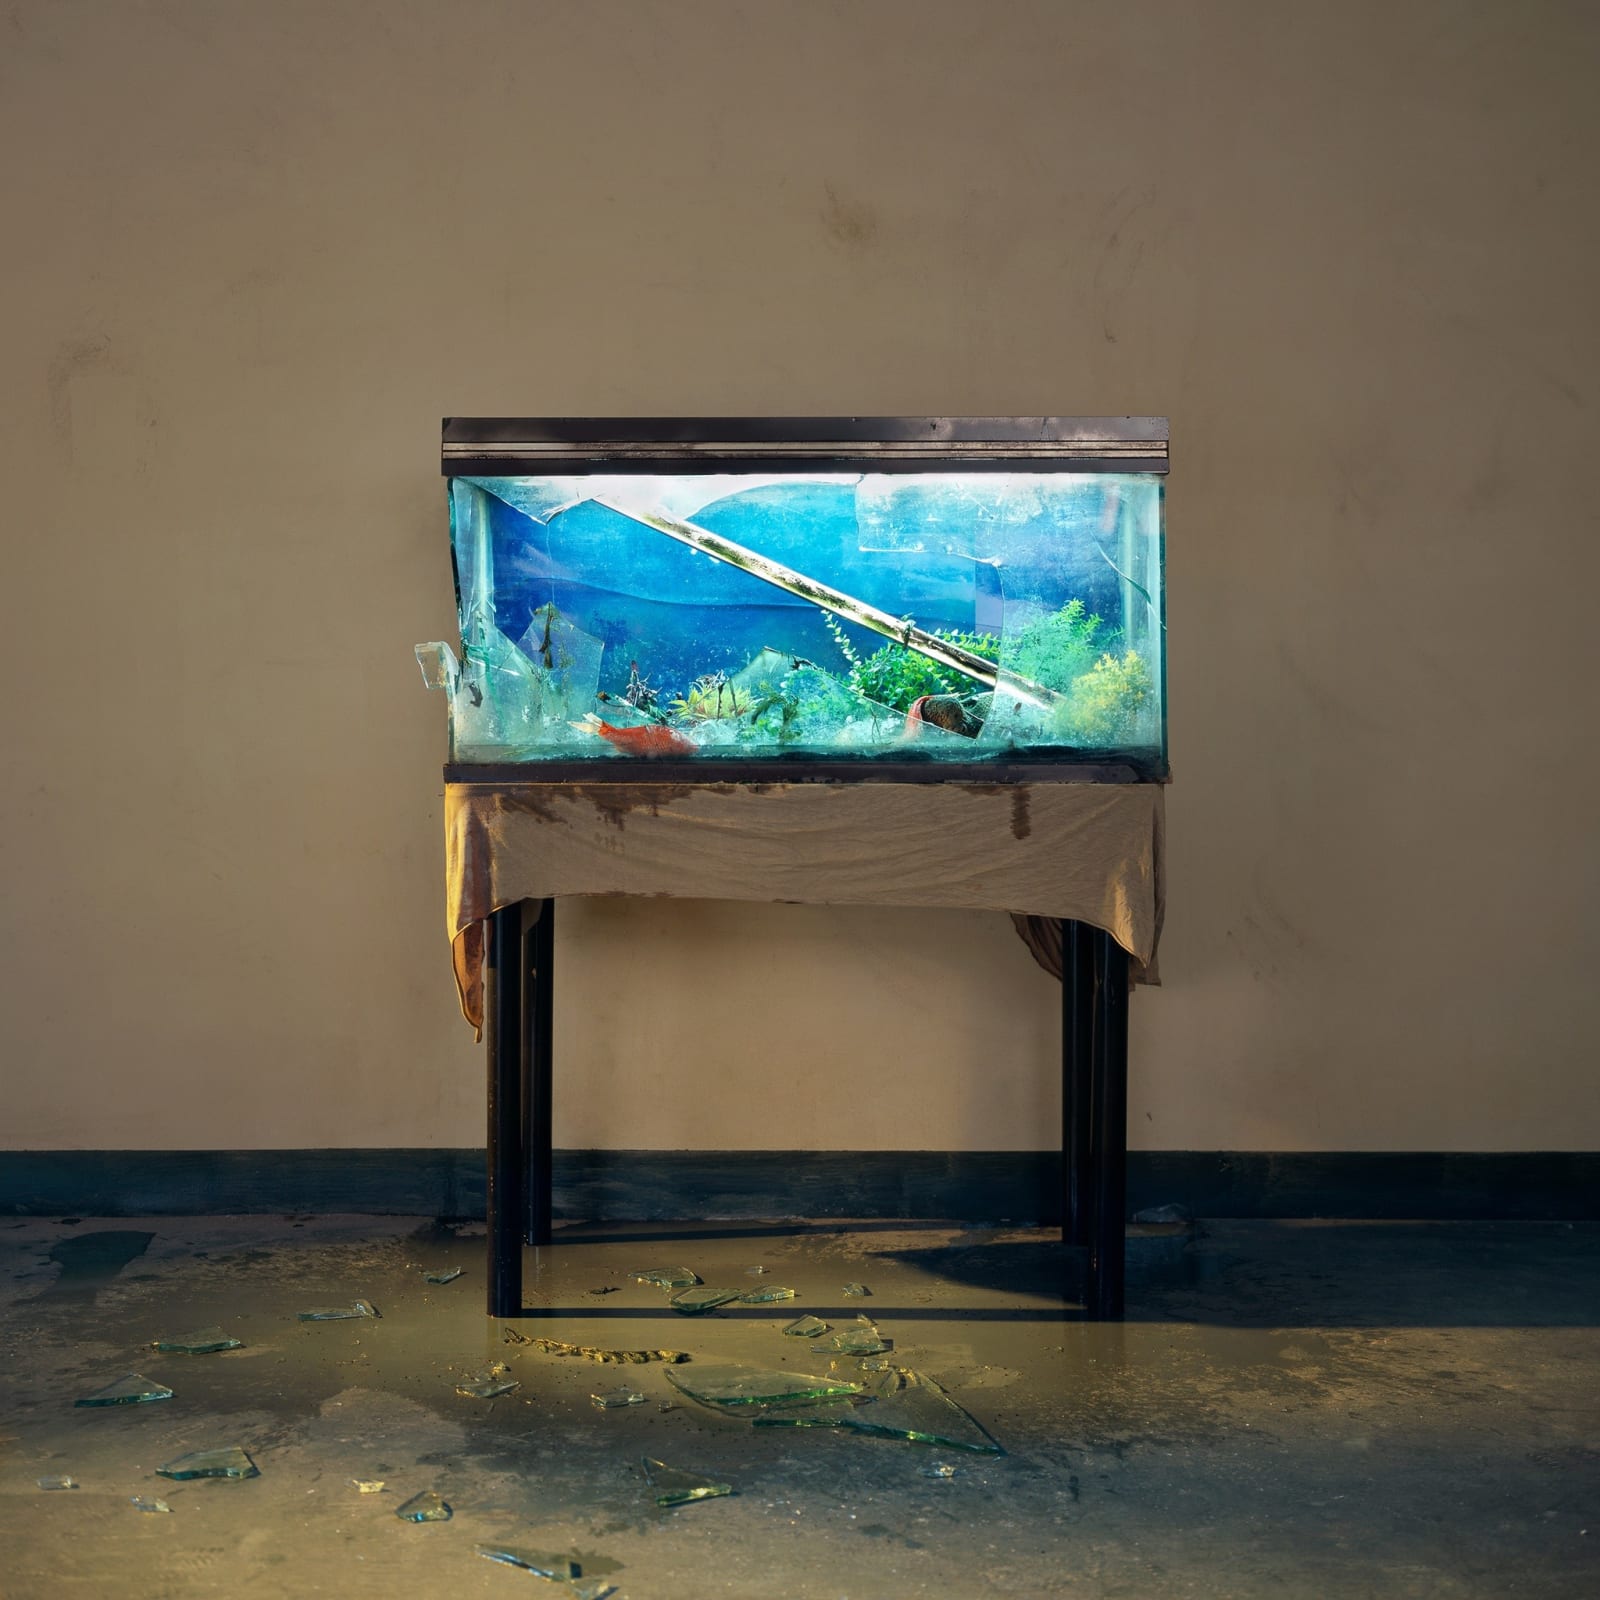 How To: Paint Aquarium Background